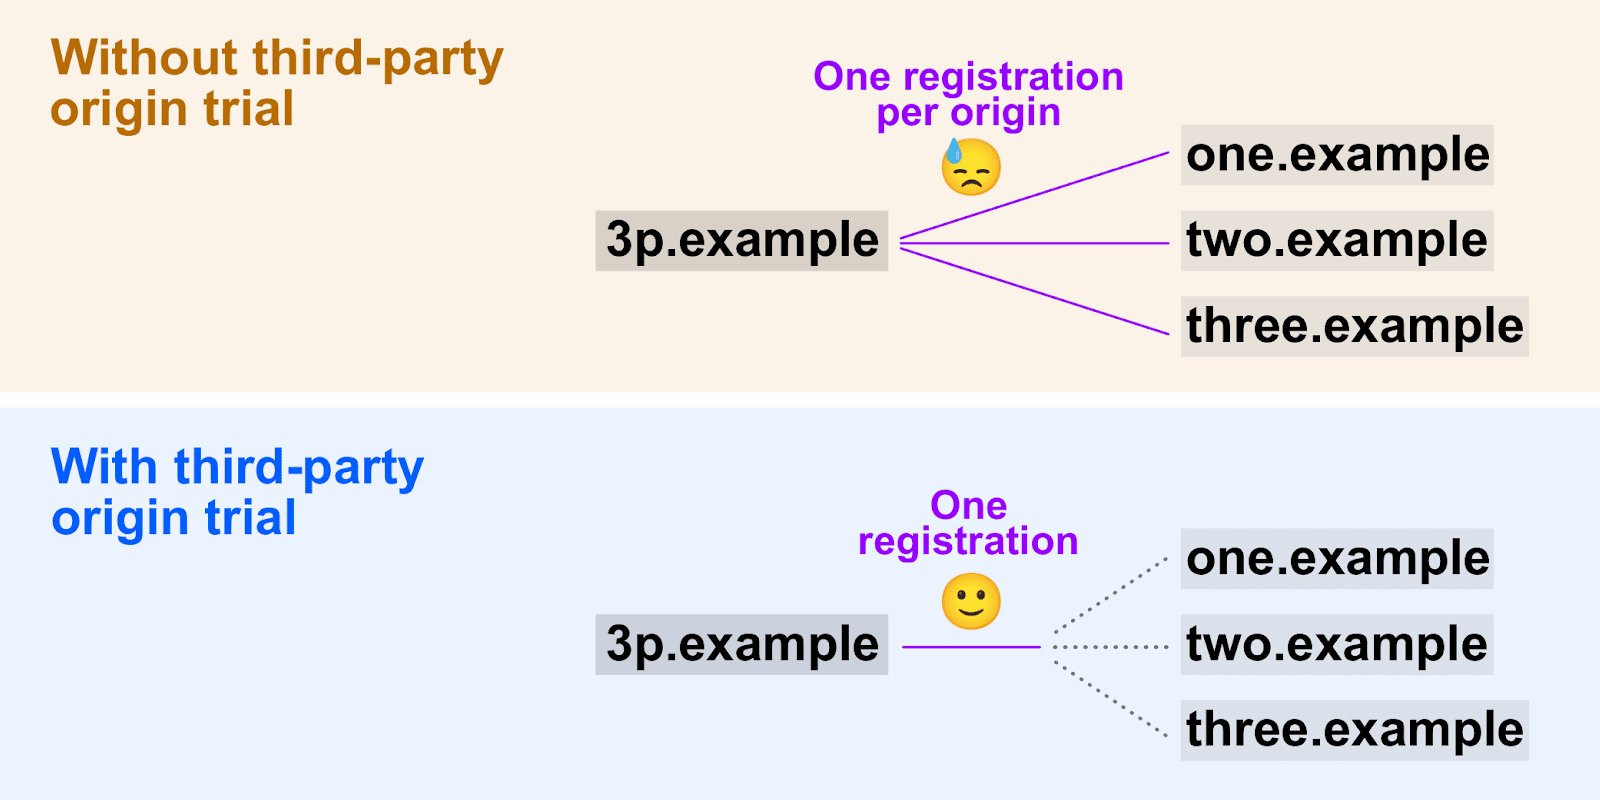 Sơ đồ cho thấy cách bản dùng thử theo nguyên gốc của bên thứ ba cho phép sử dụng một mã thông báo đăng ký duy nhất trên nhiều nguồn gốc.